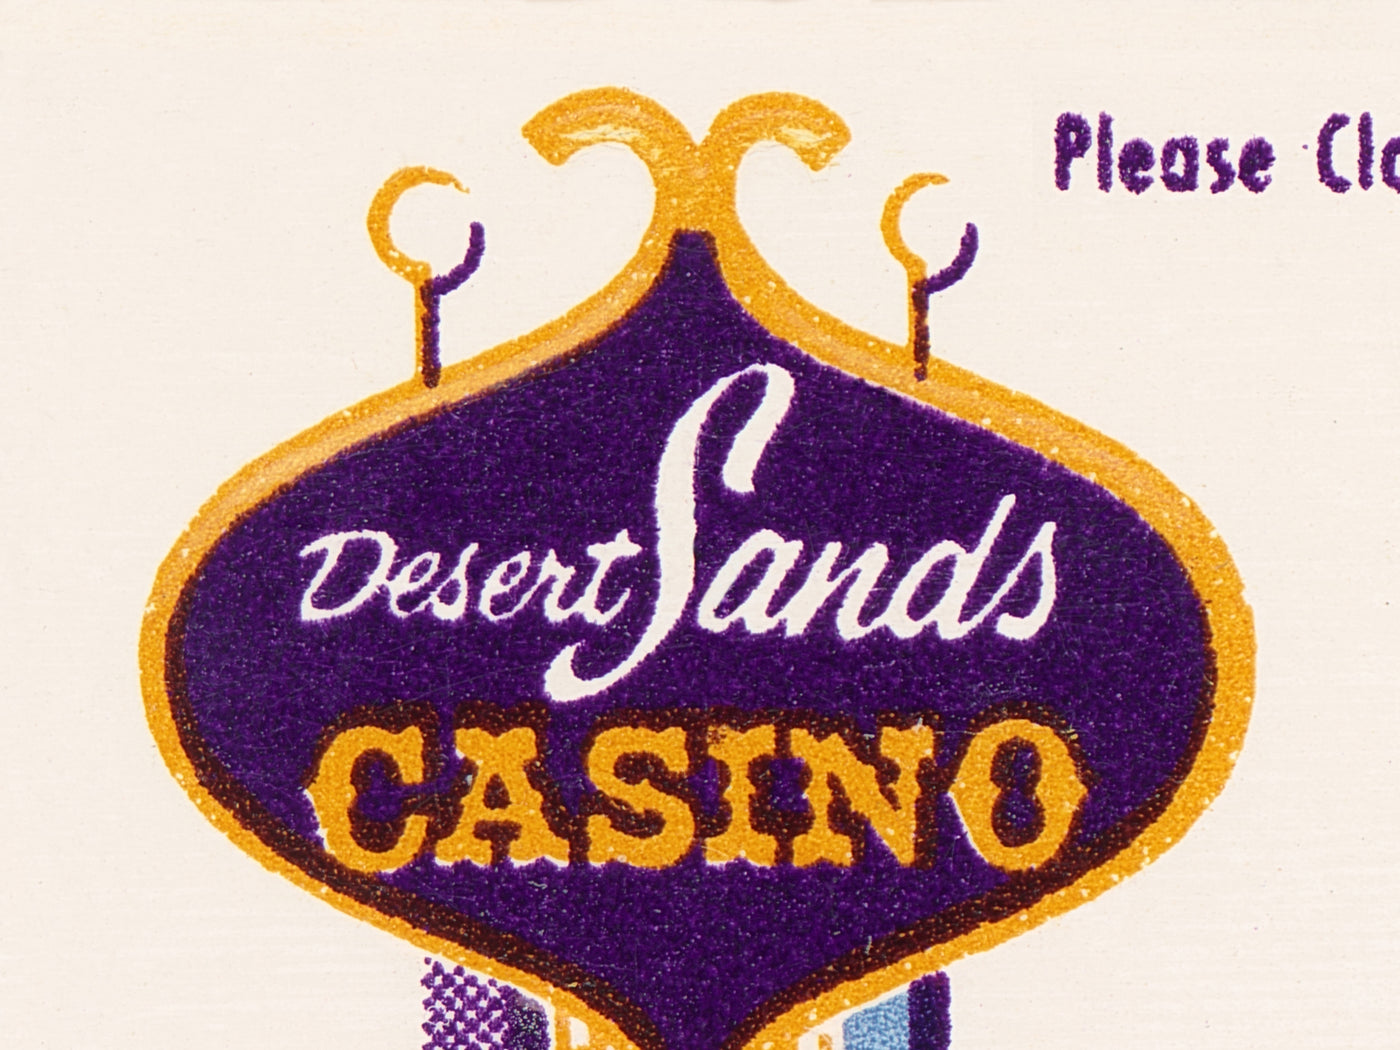 Desert Sands Casino Matchbook Print